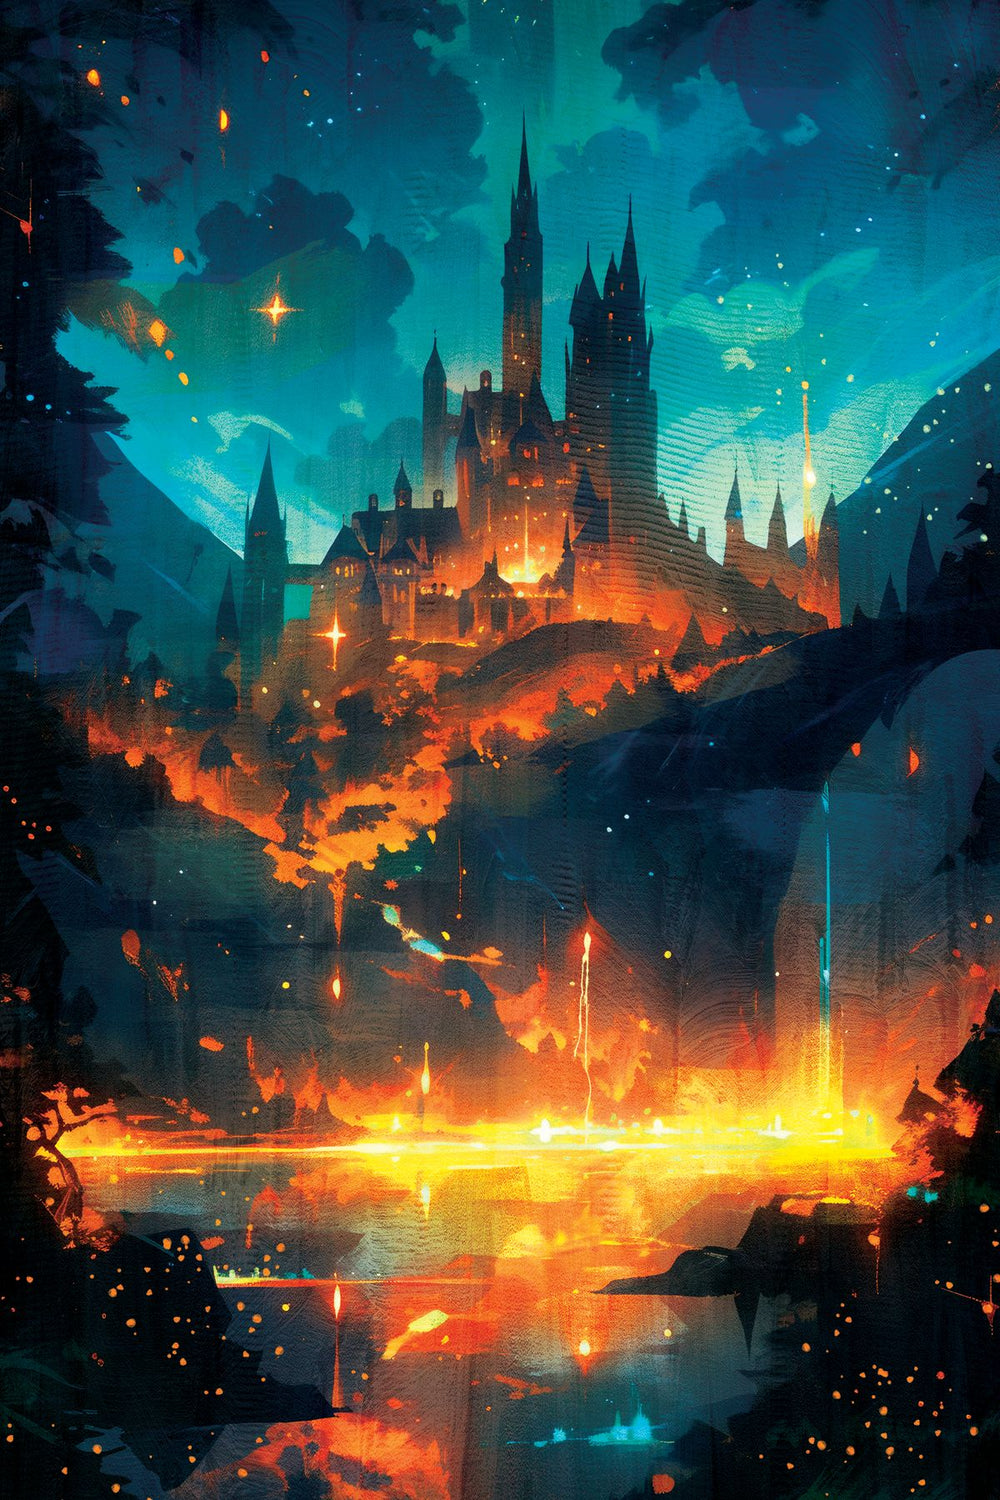 Mythical Castle Ablaze